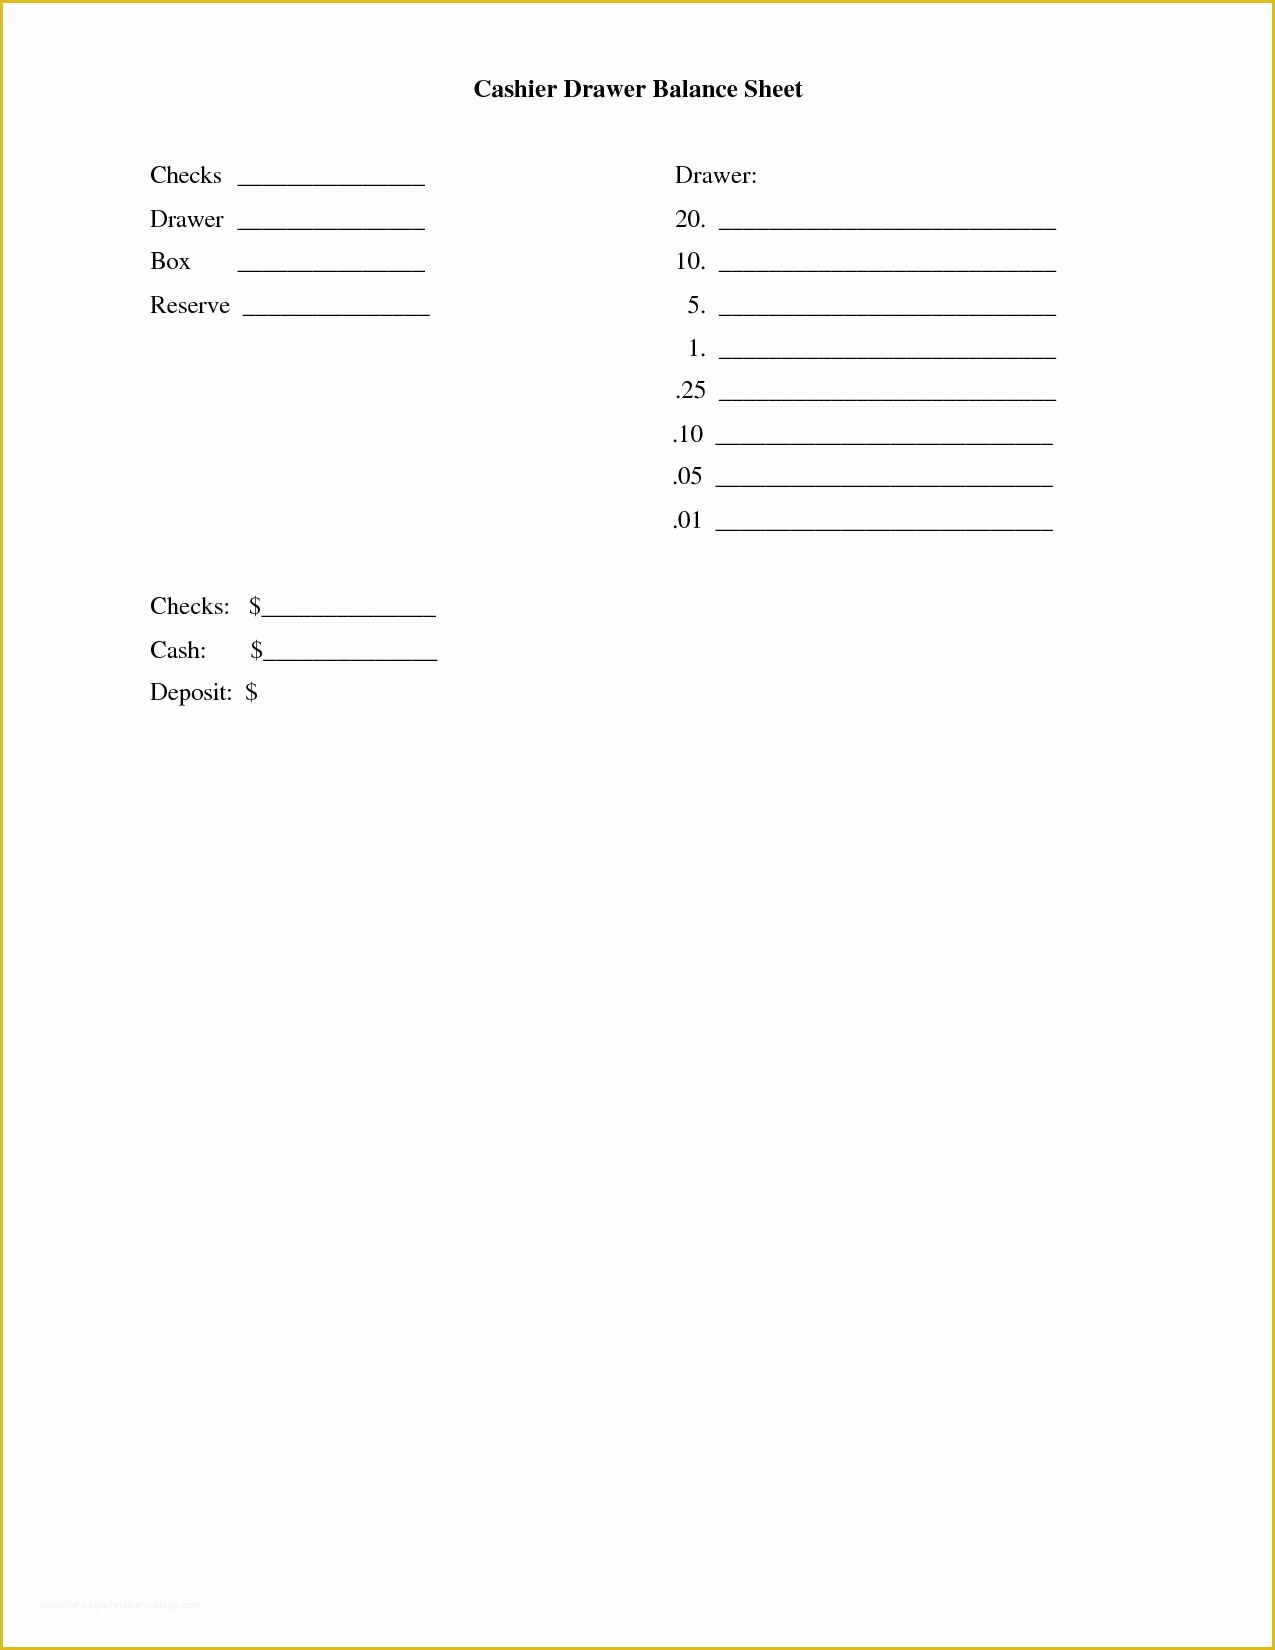 Cash Sheet Template Free Of Cash Drawer Balance Sheet